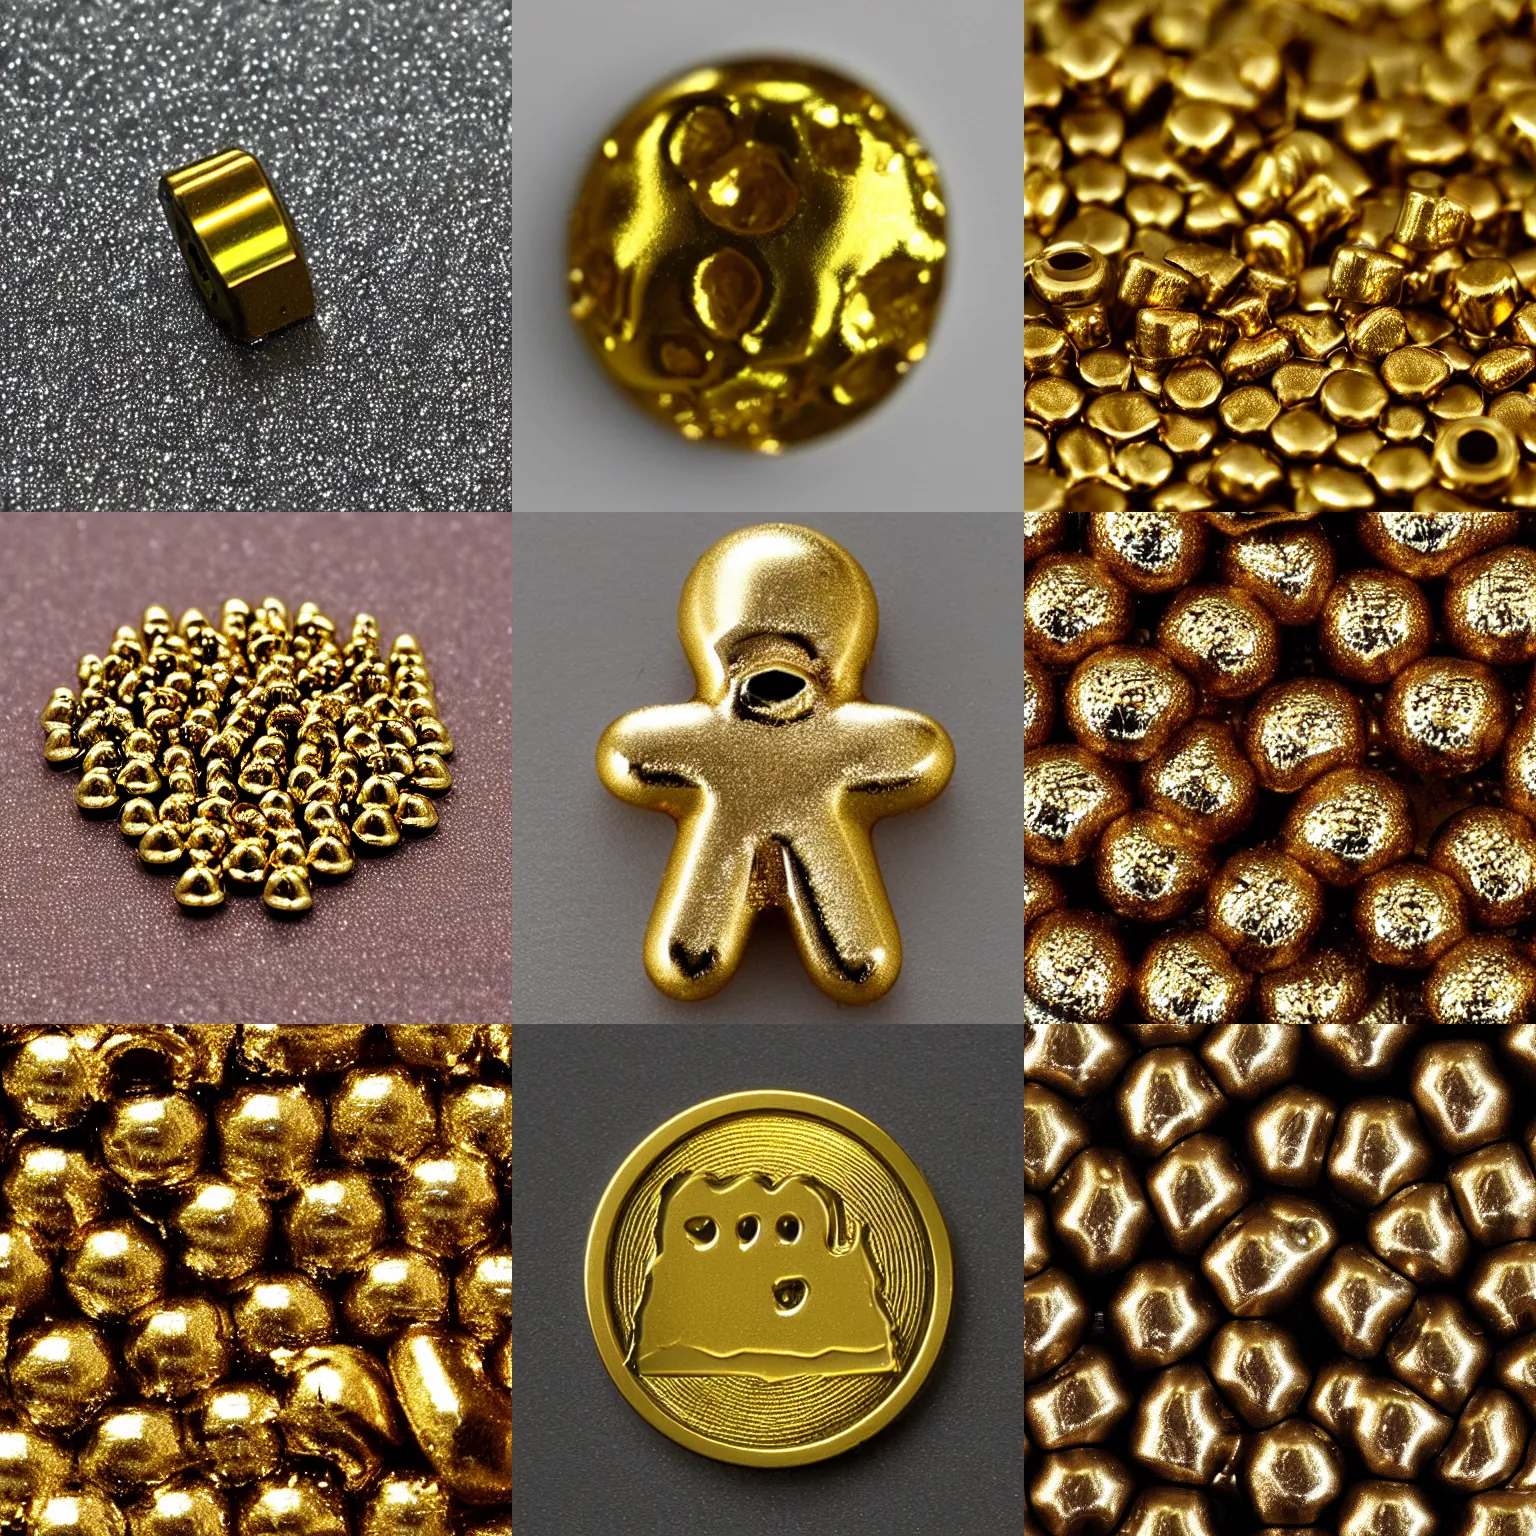 Prompt: poop metallic, golden, toy, macro 8 mm